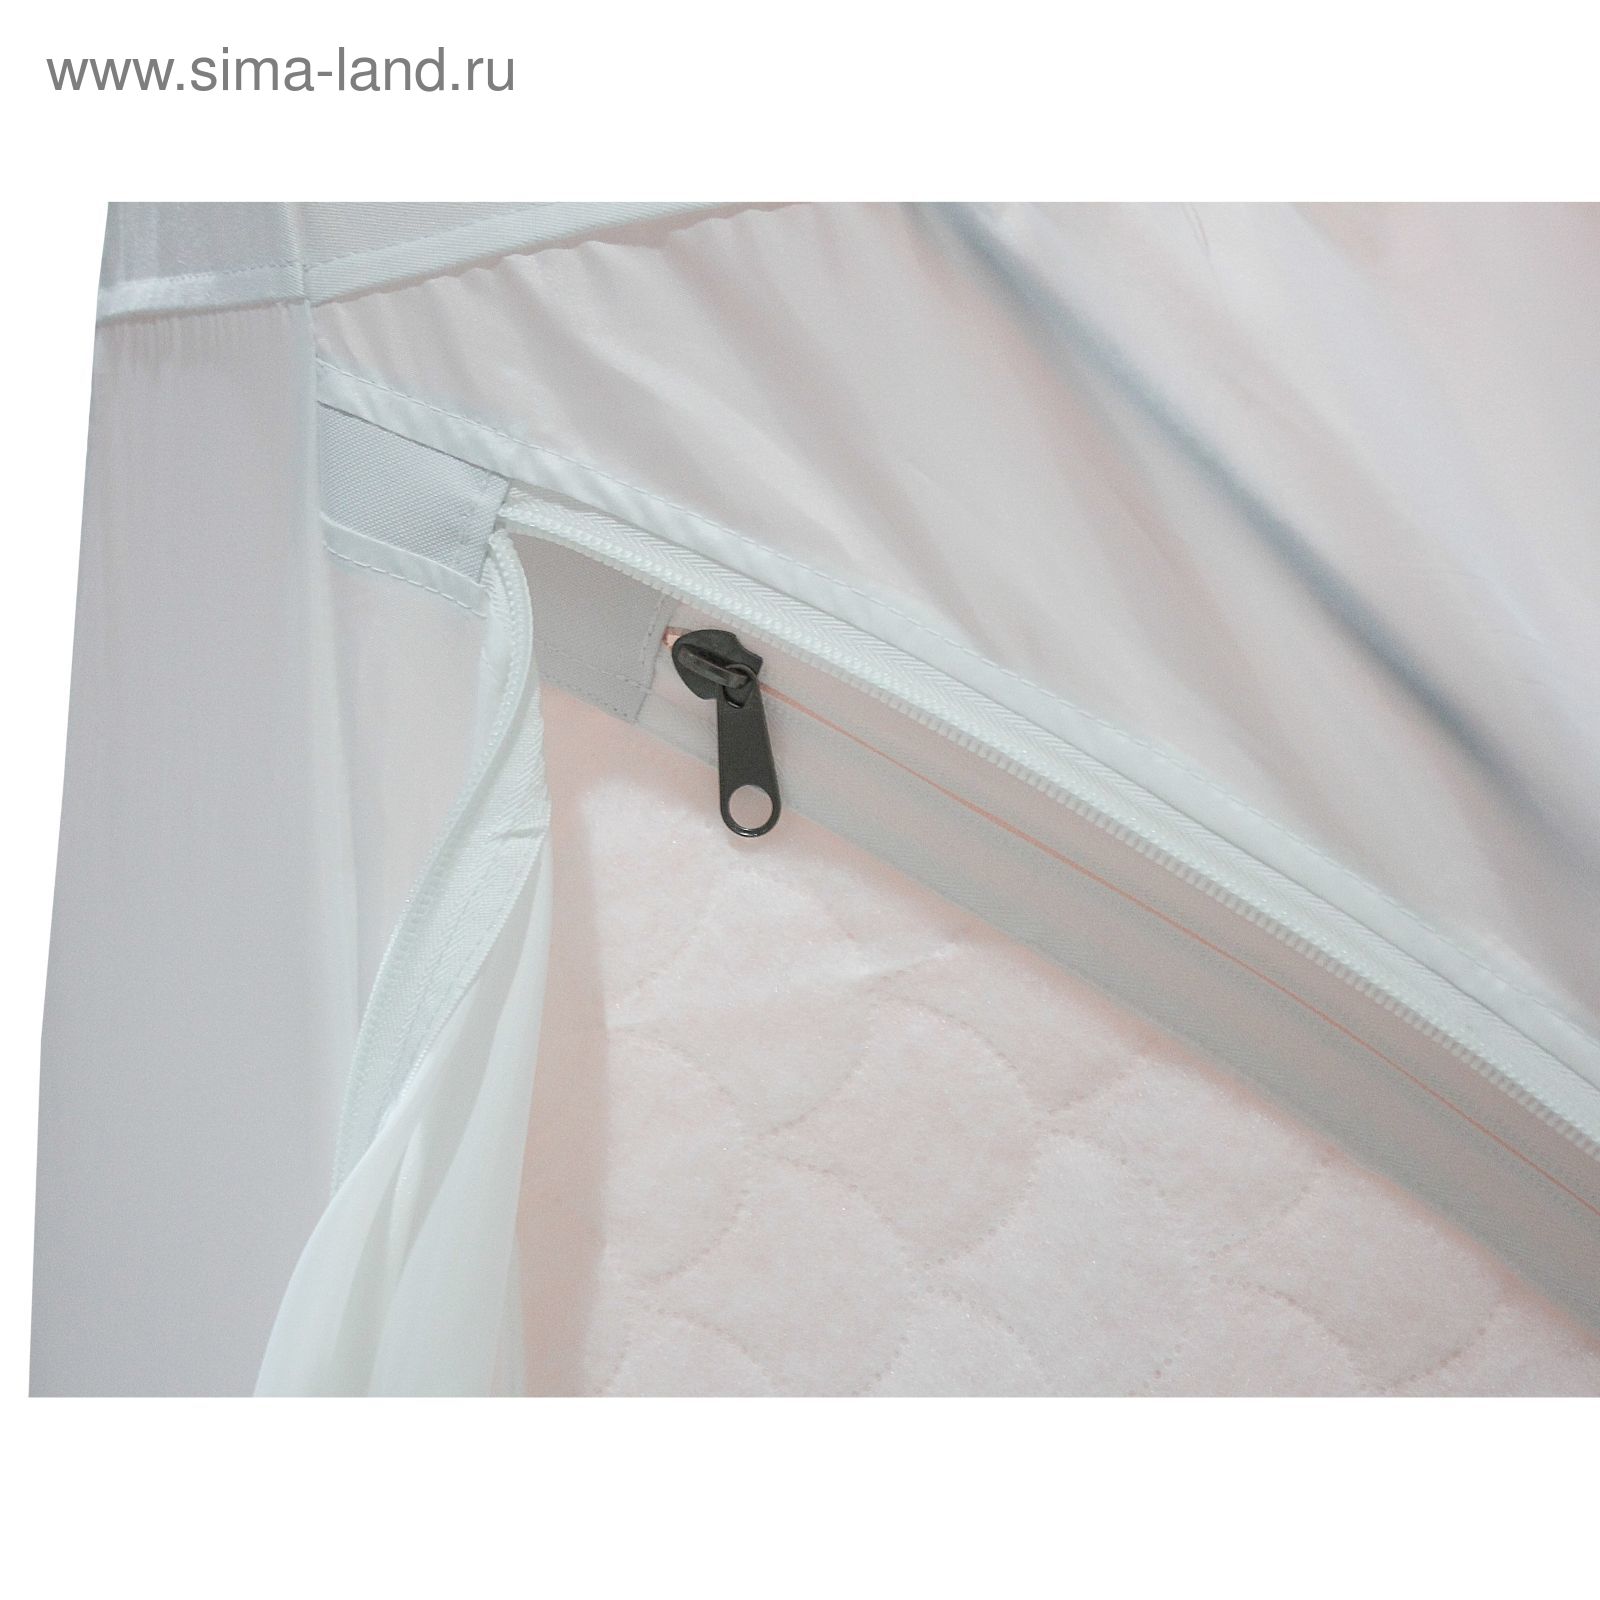 Палатка "Призма Стандарт" 150, 3-слойная, цвет бело-оранжевый